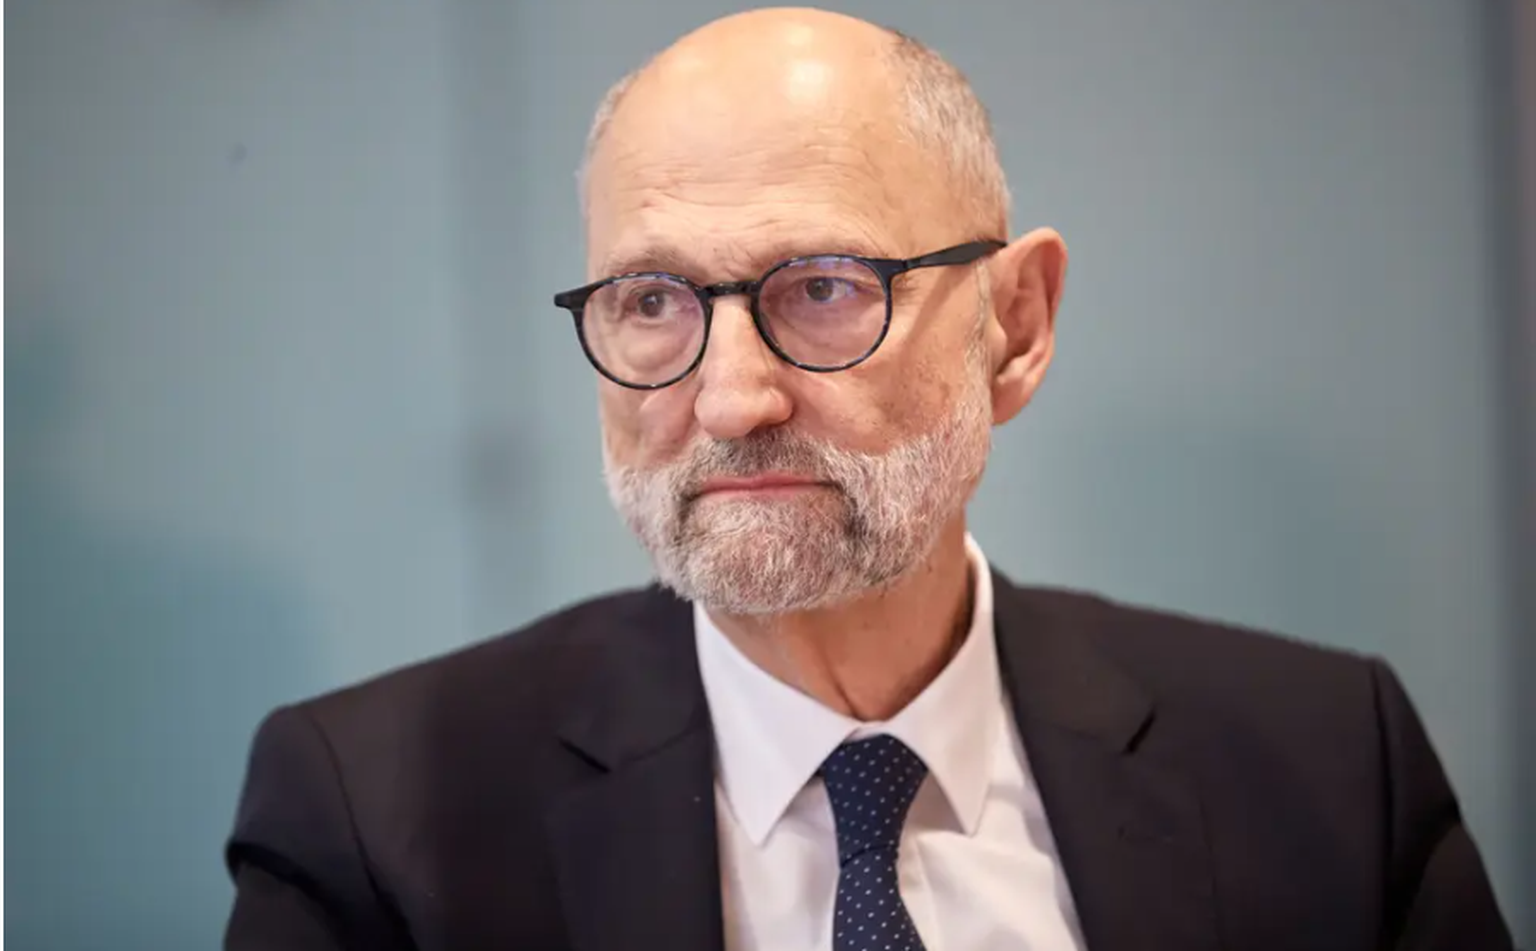 Seit 2020 präsidiert der Ökonom und ehemalige Basler SP-Regierungsrat Ralph Lewin (70) den Schweizerischen Israelitischen Gemeindebund (SIG).